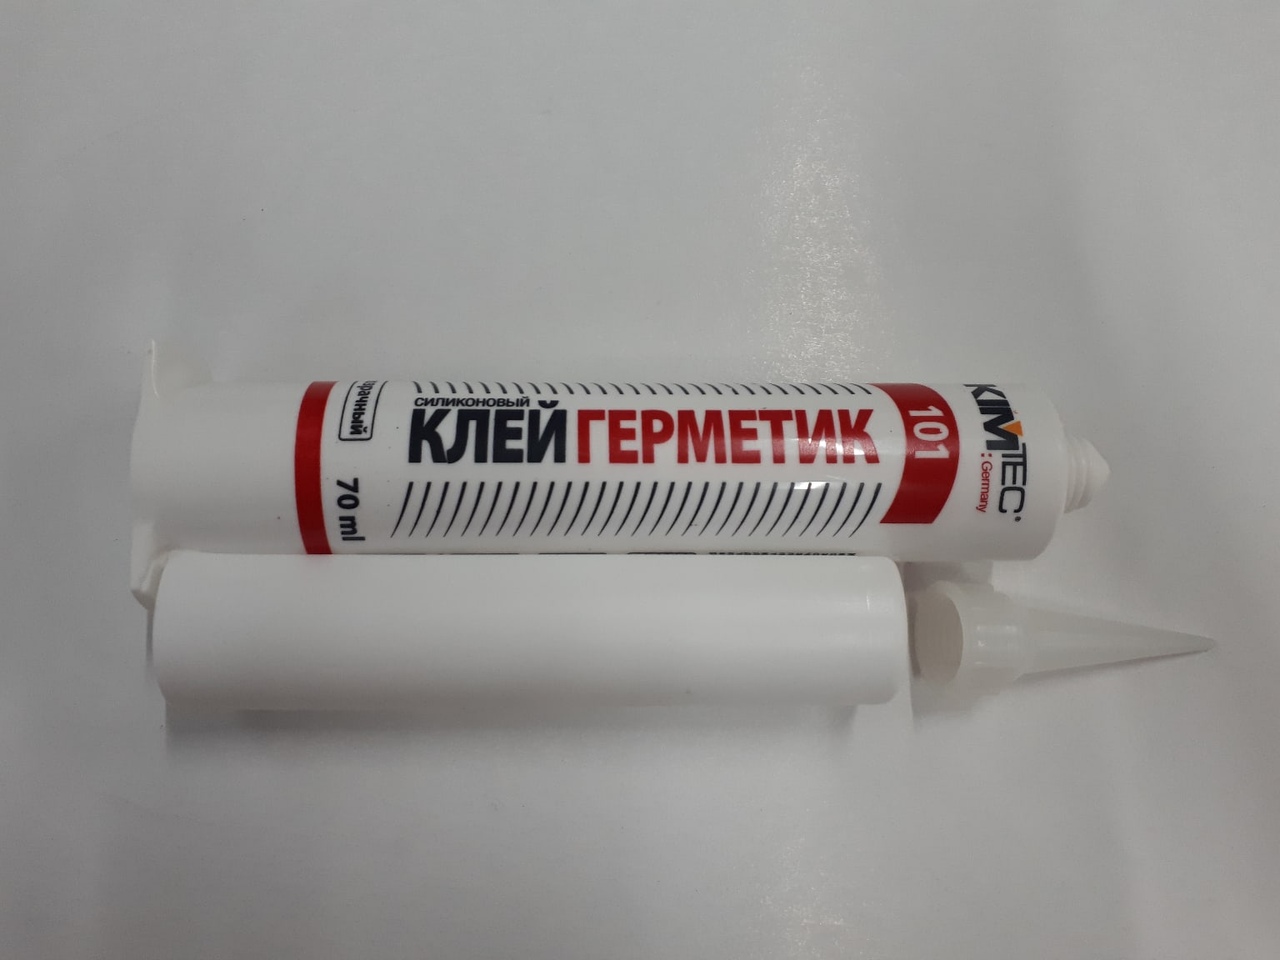 Клей герметик силиконовый KIM TEC (70 мл)